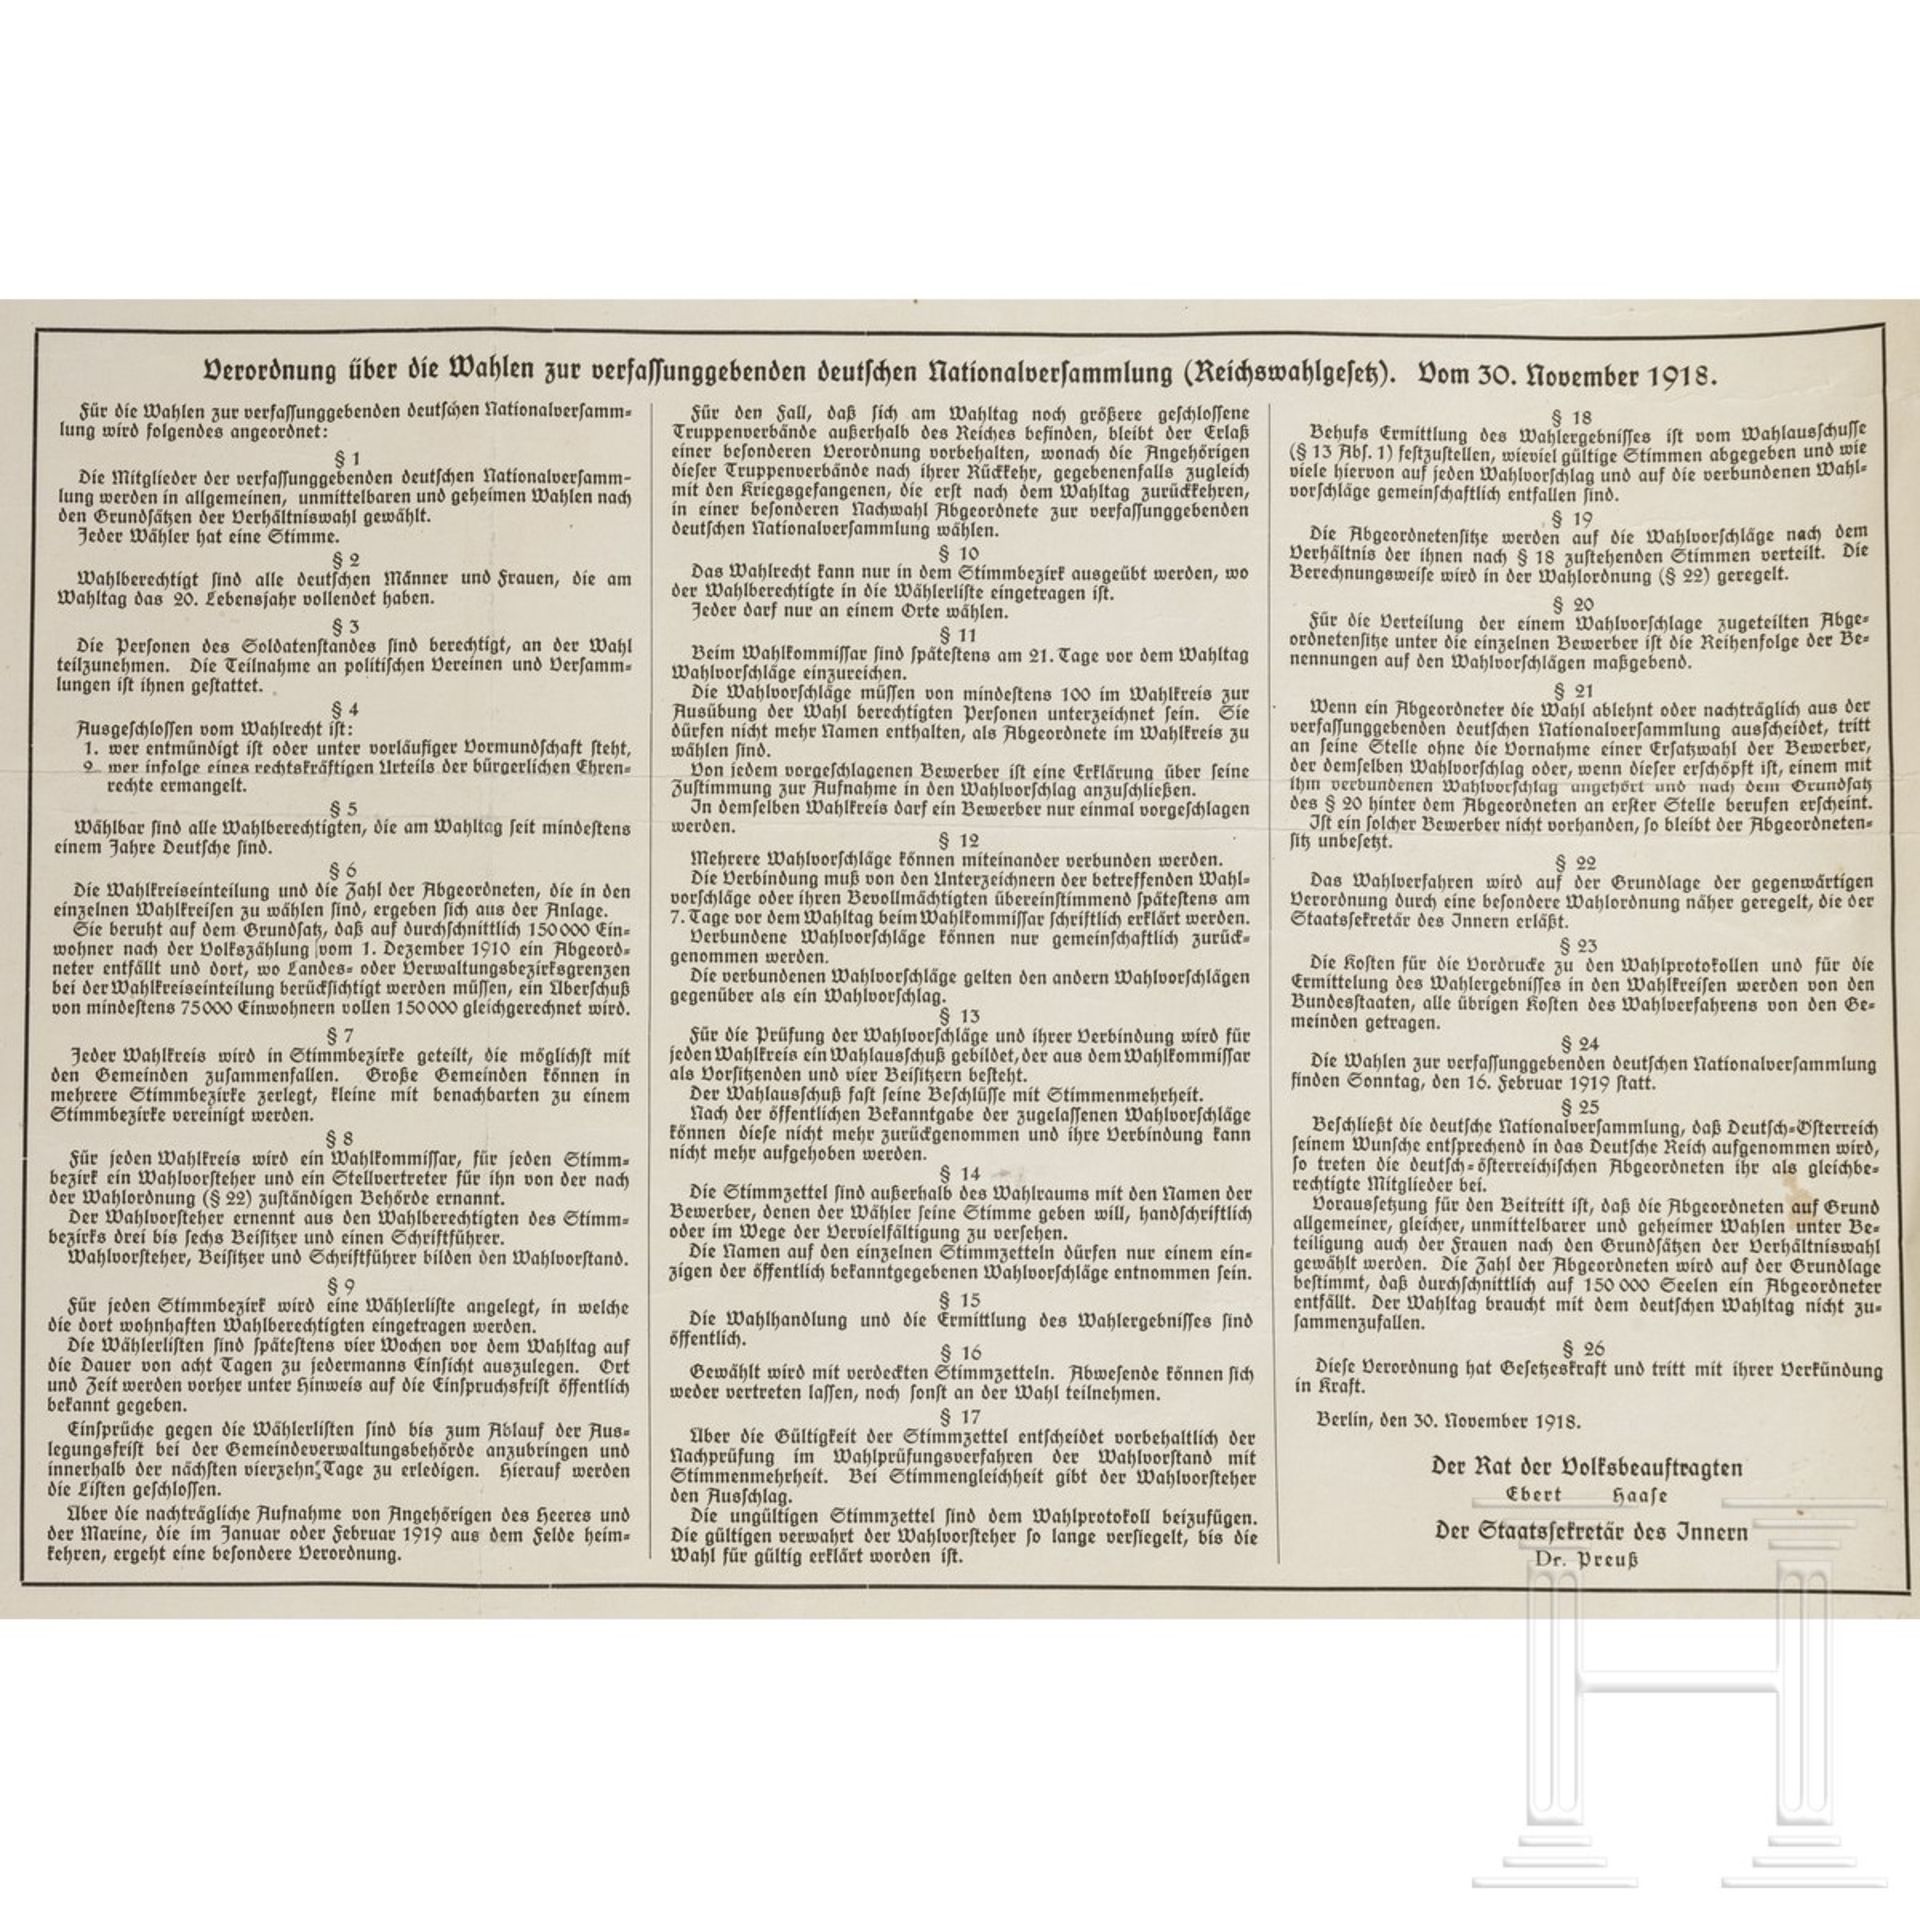 Plakat zu den Ergebnissen der Wahl zur Nationalversammlung 1919 - Image 3 of 4